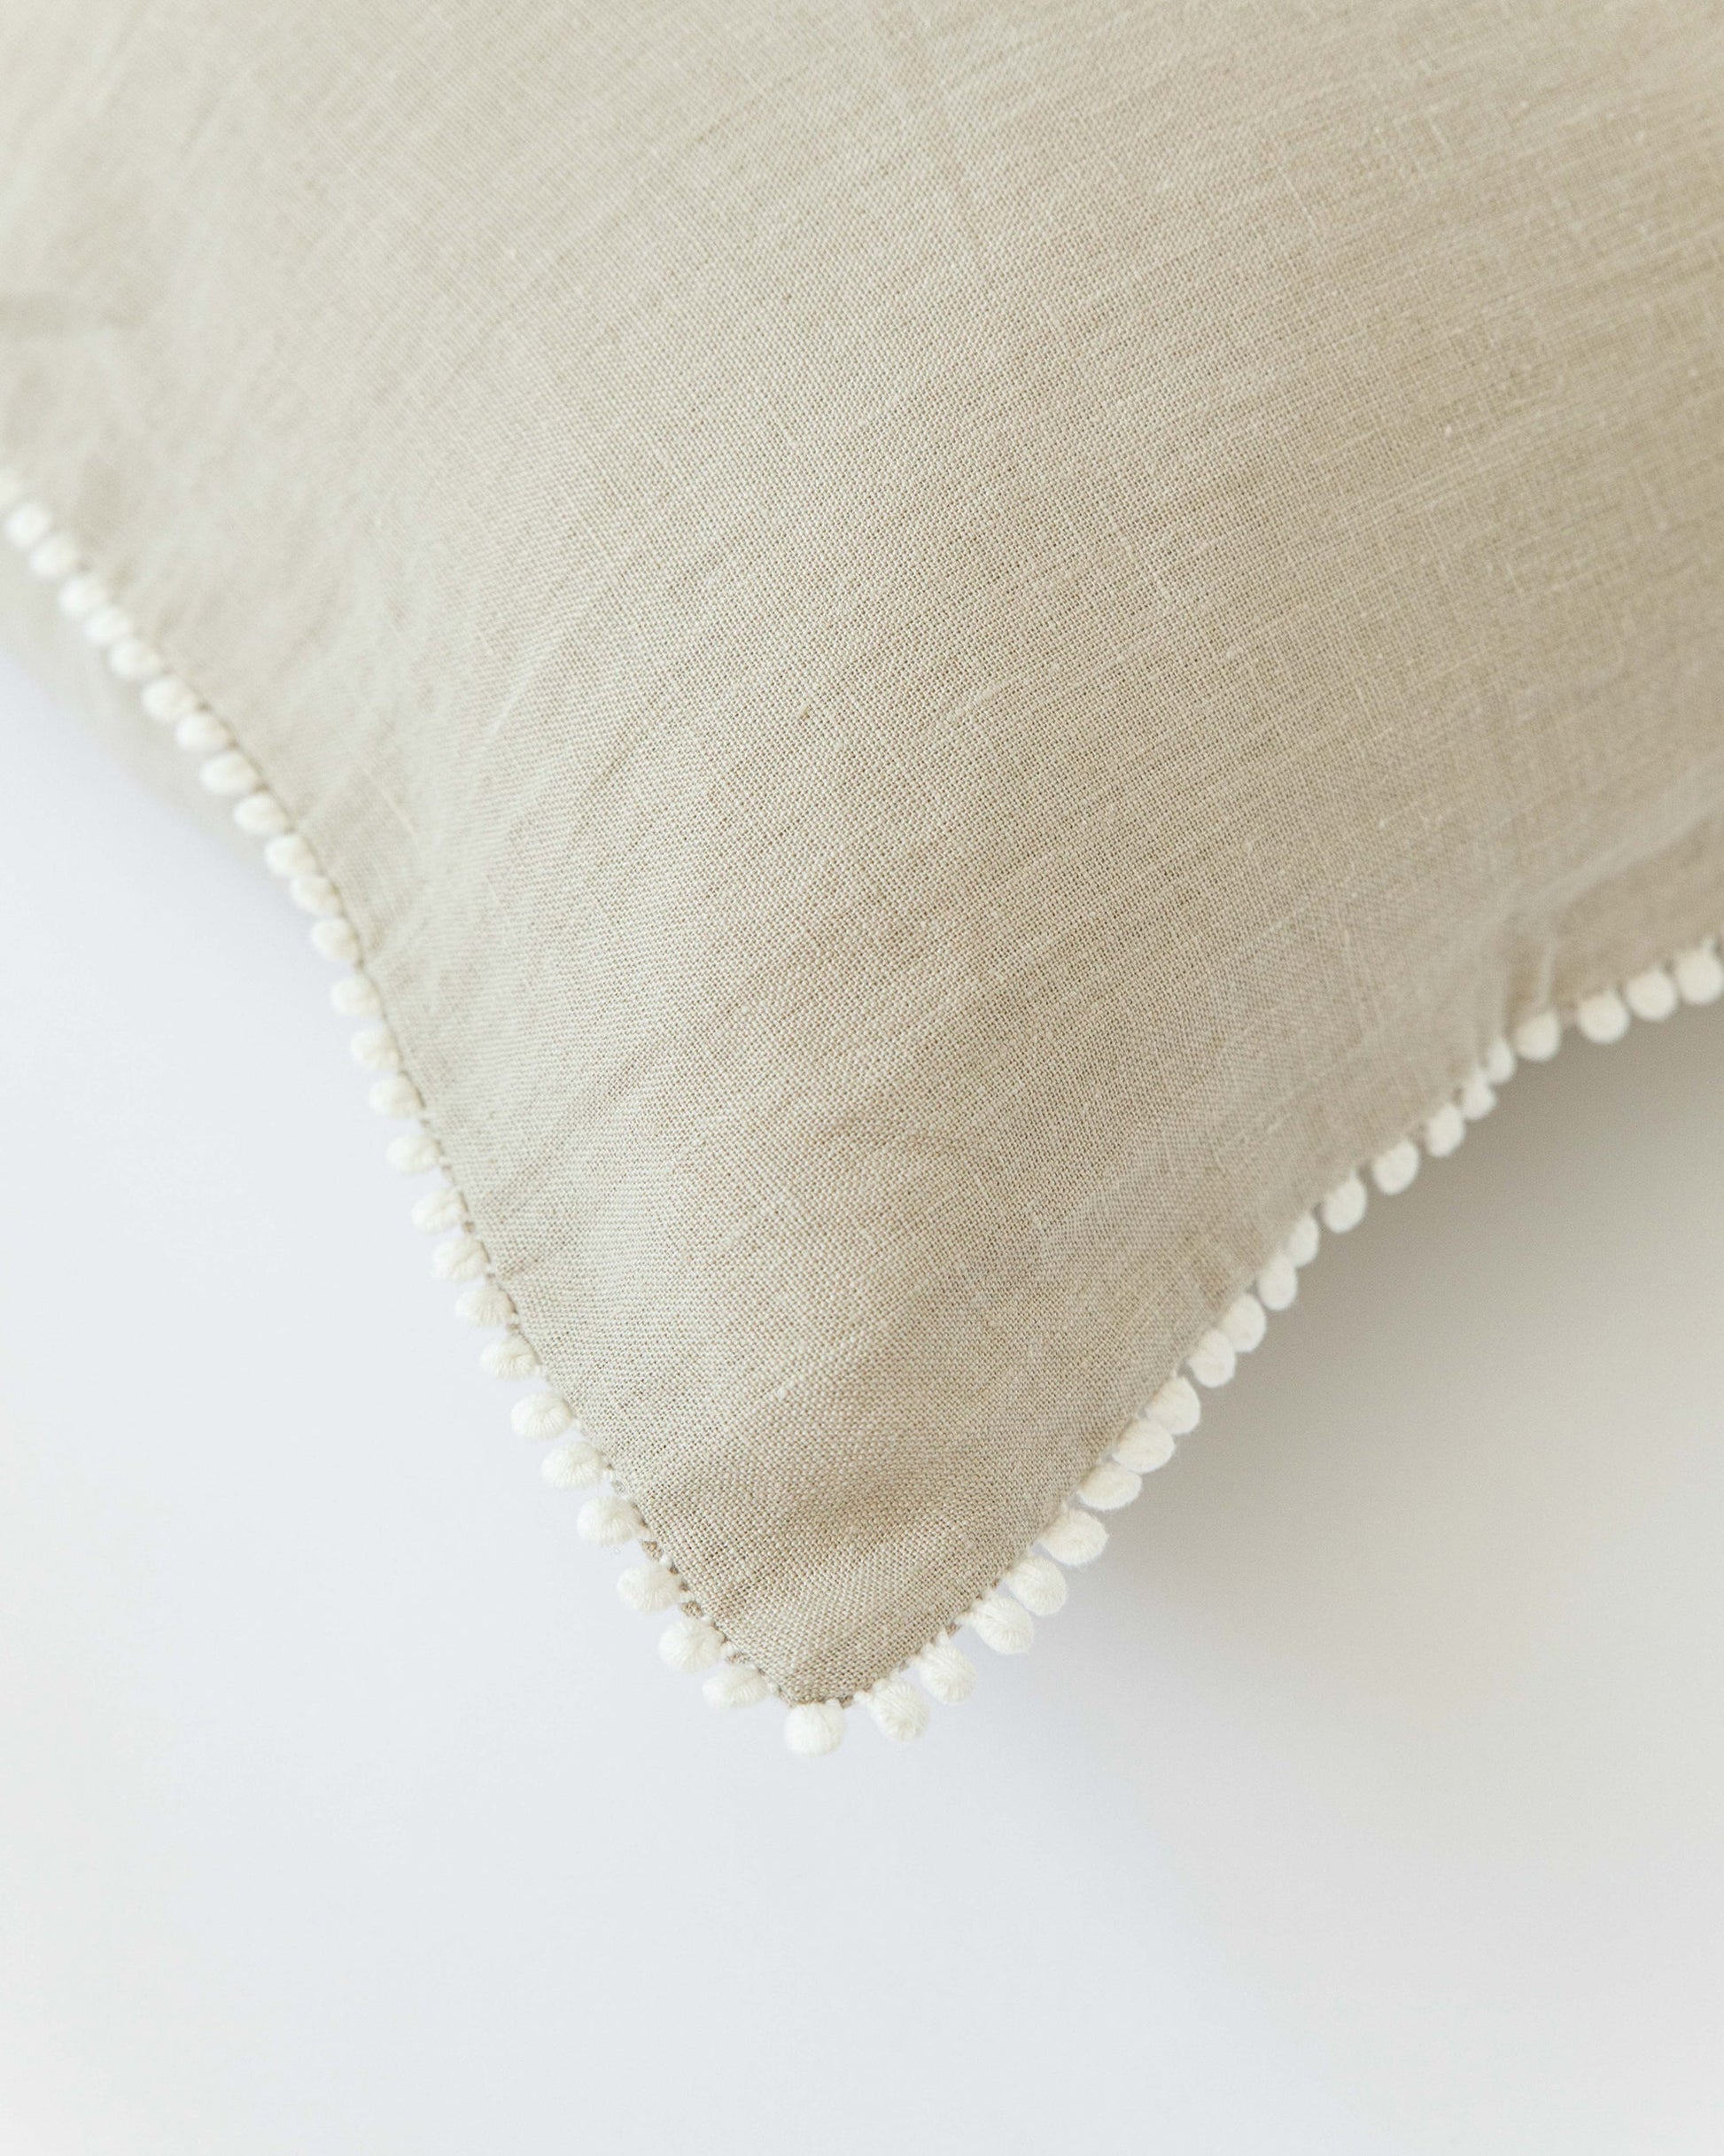 Pom pom trim linen pillowcase in Natural linen - MagicLinen